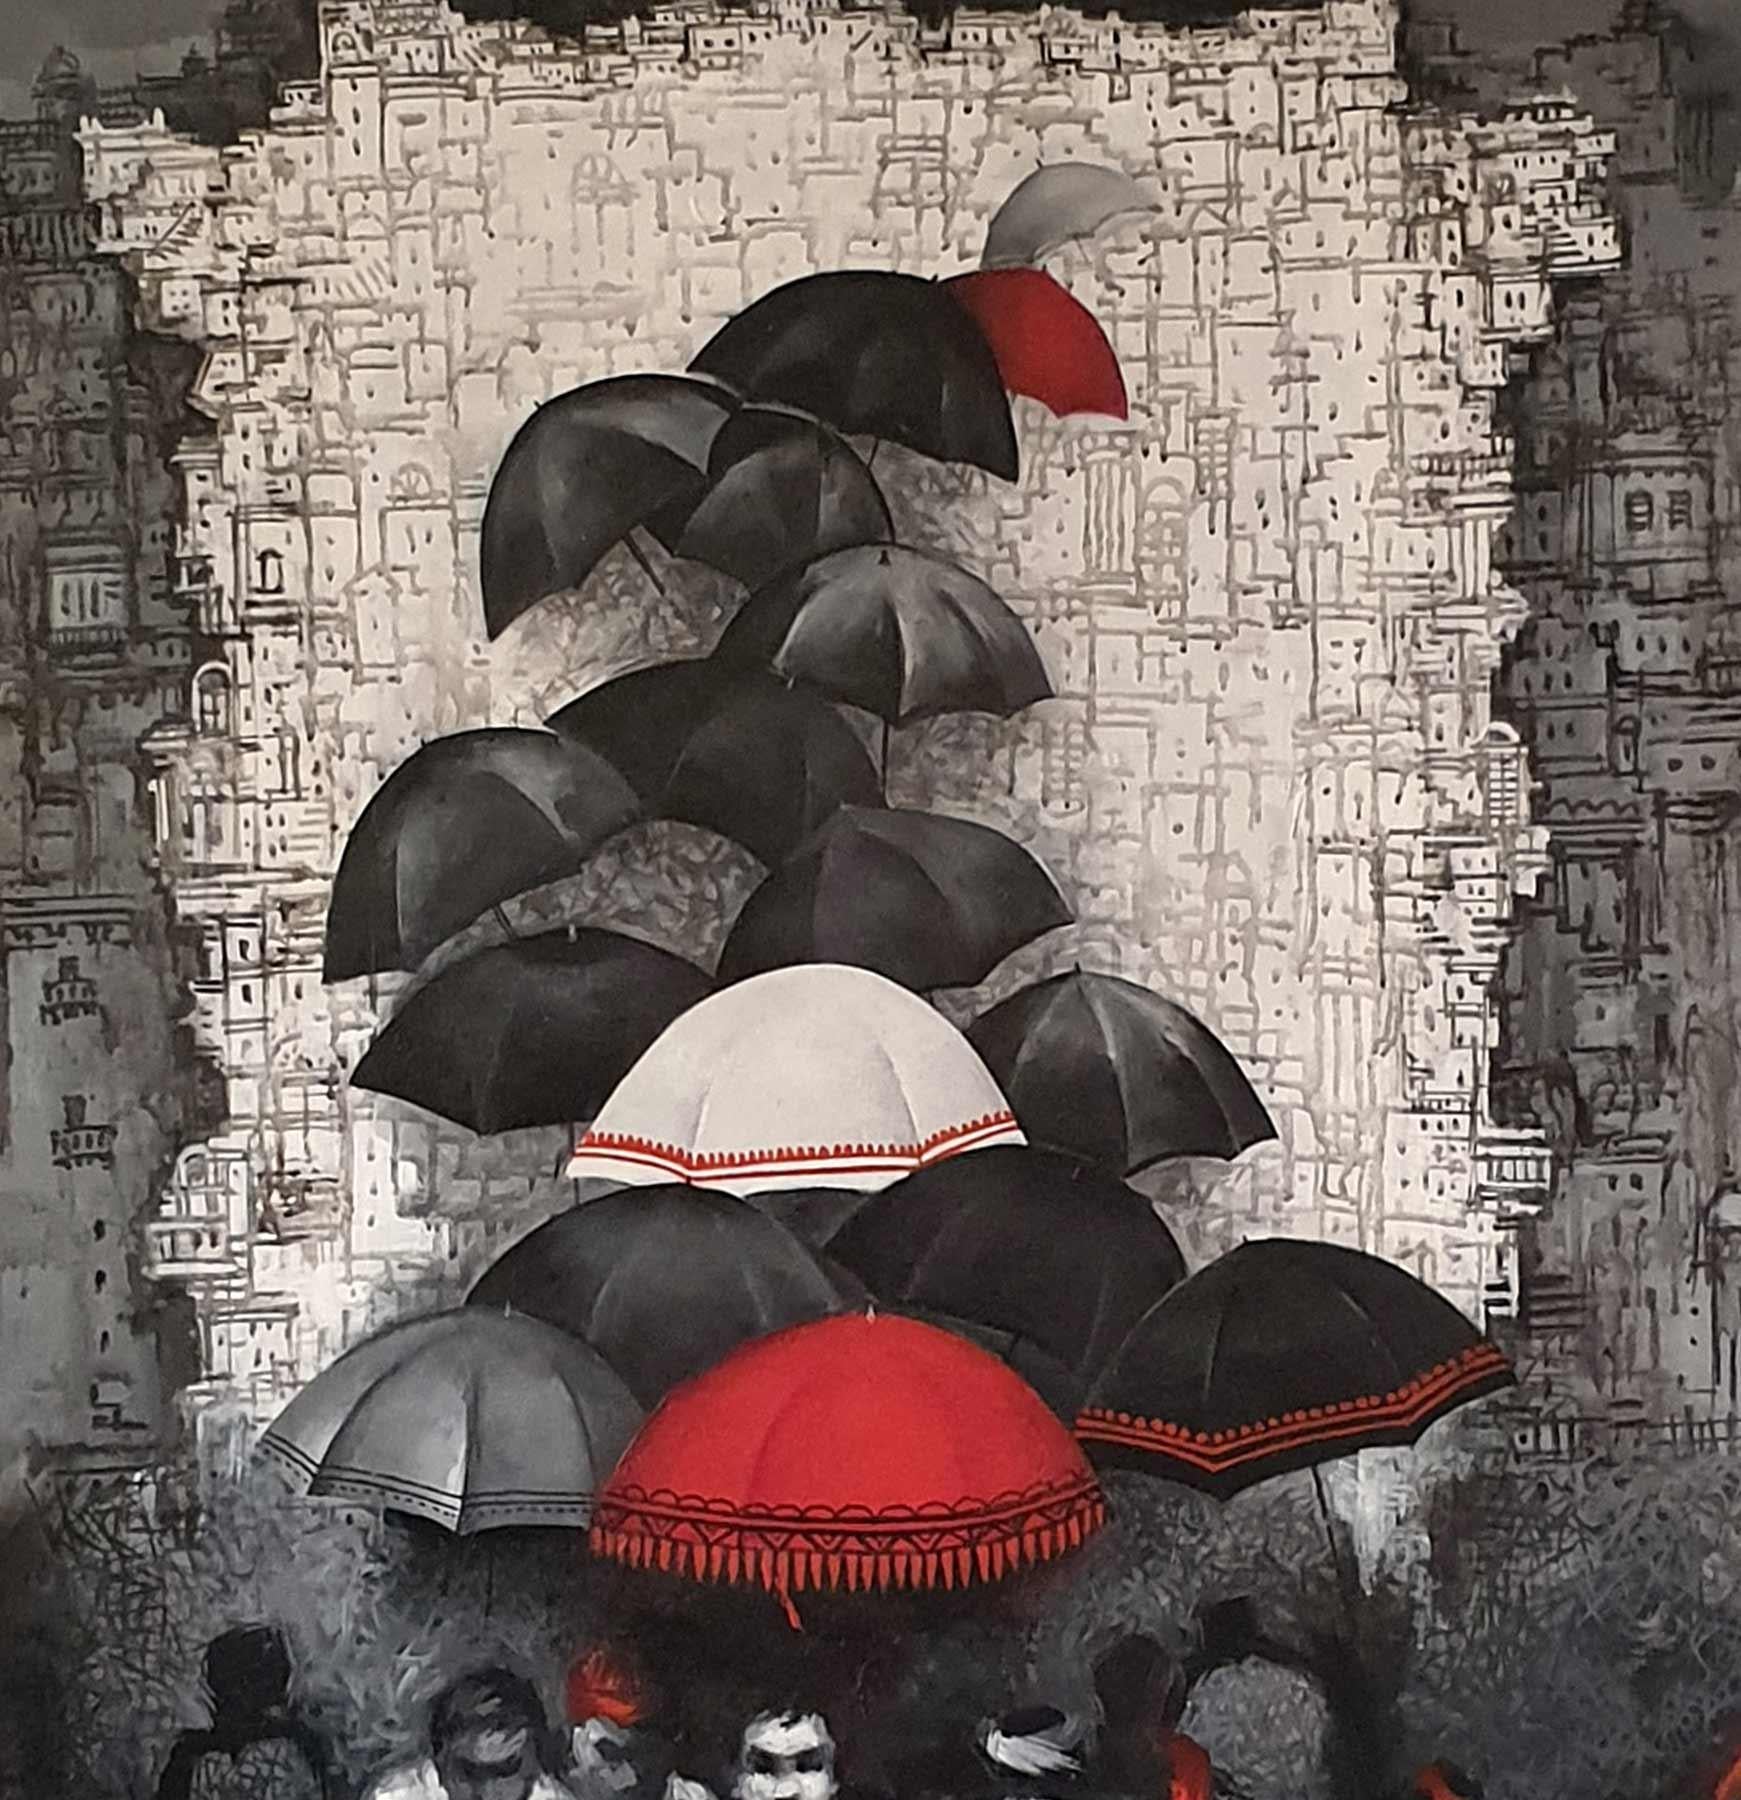 Dilip Chaudhury - Ohne Titel - 51 x 36 Zoll (ungerahmte Größe)
Acryl auf Leinwand

Stil : Die Werke von Dilip Chaudhury zeigen die bengalische Landschaft und seine Heimatstadt Kolkata im Monsunregen. Seine Schwarz-Weiß-Arbeiten sind sehr beliebt,